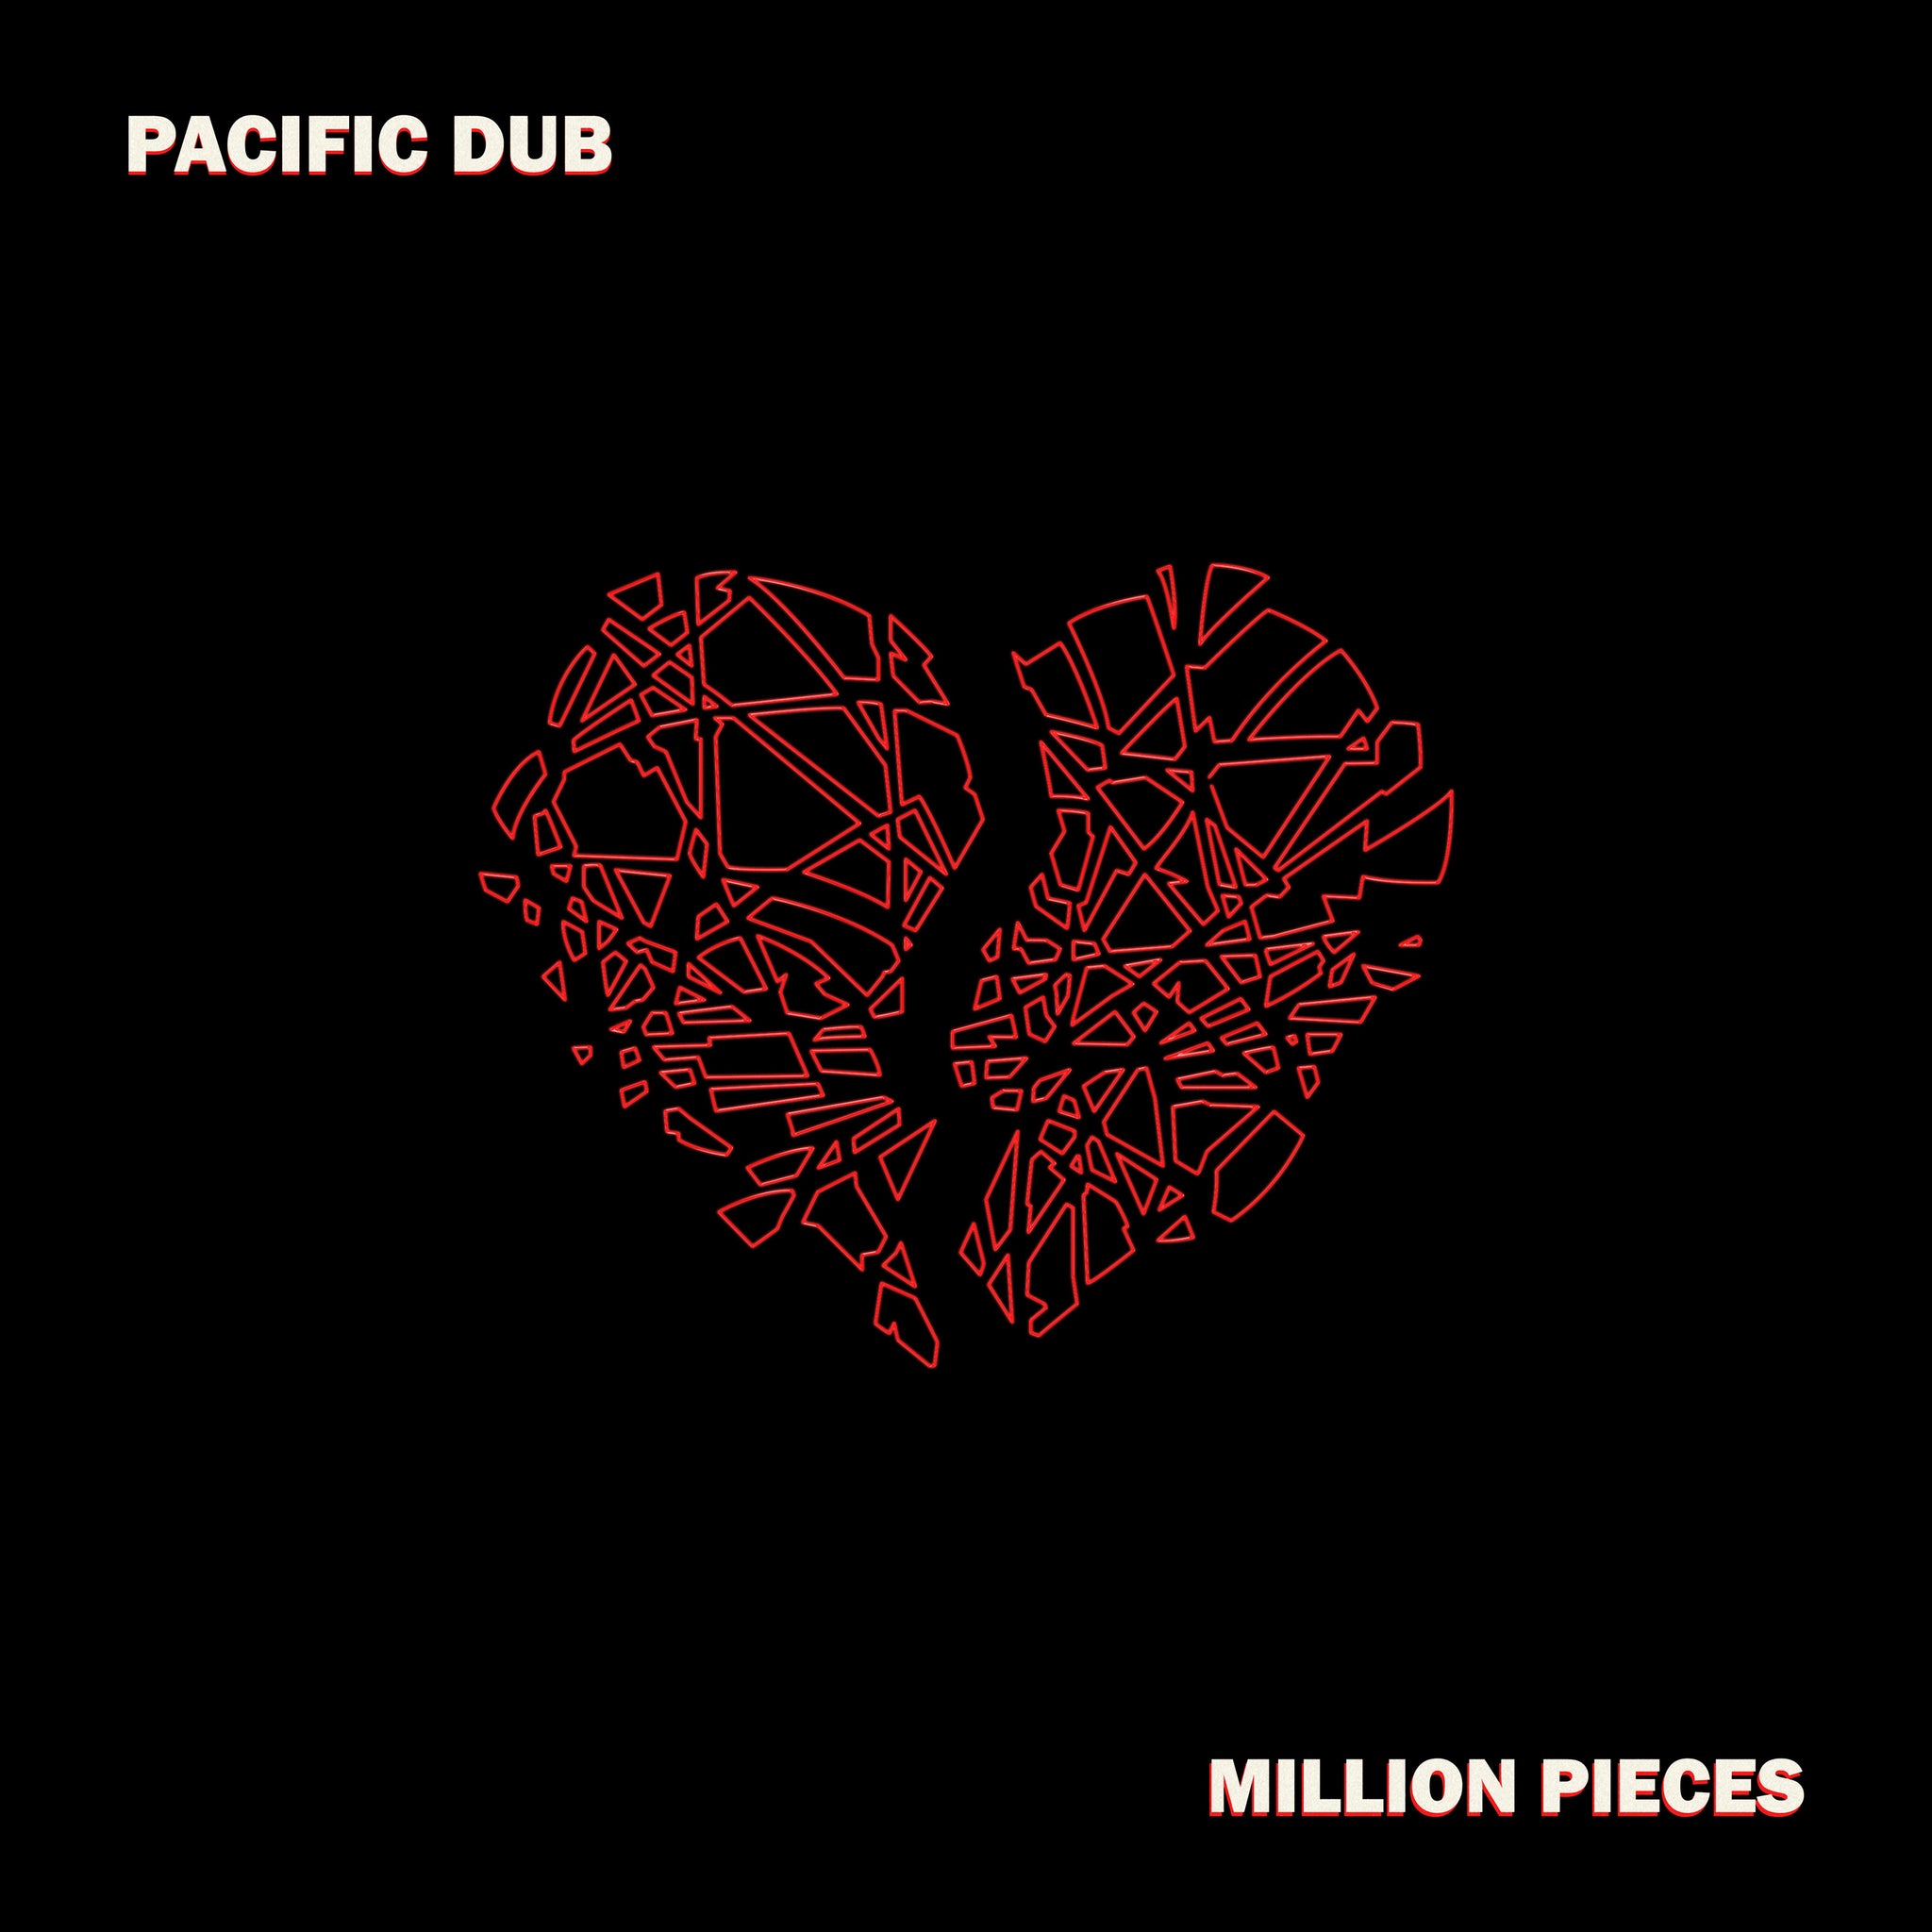 Million Pieces CD